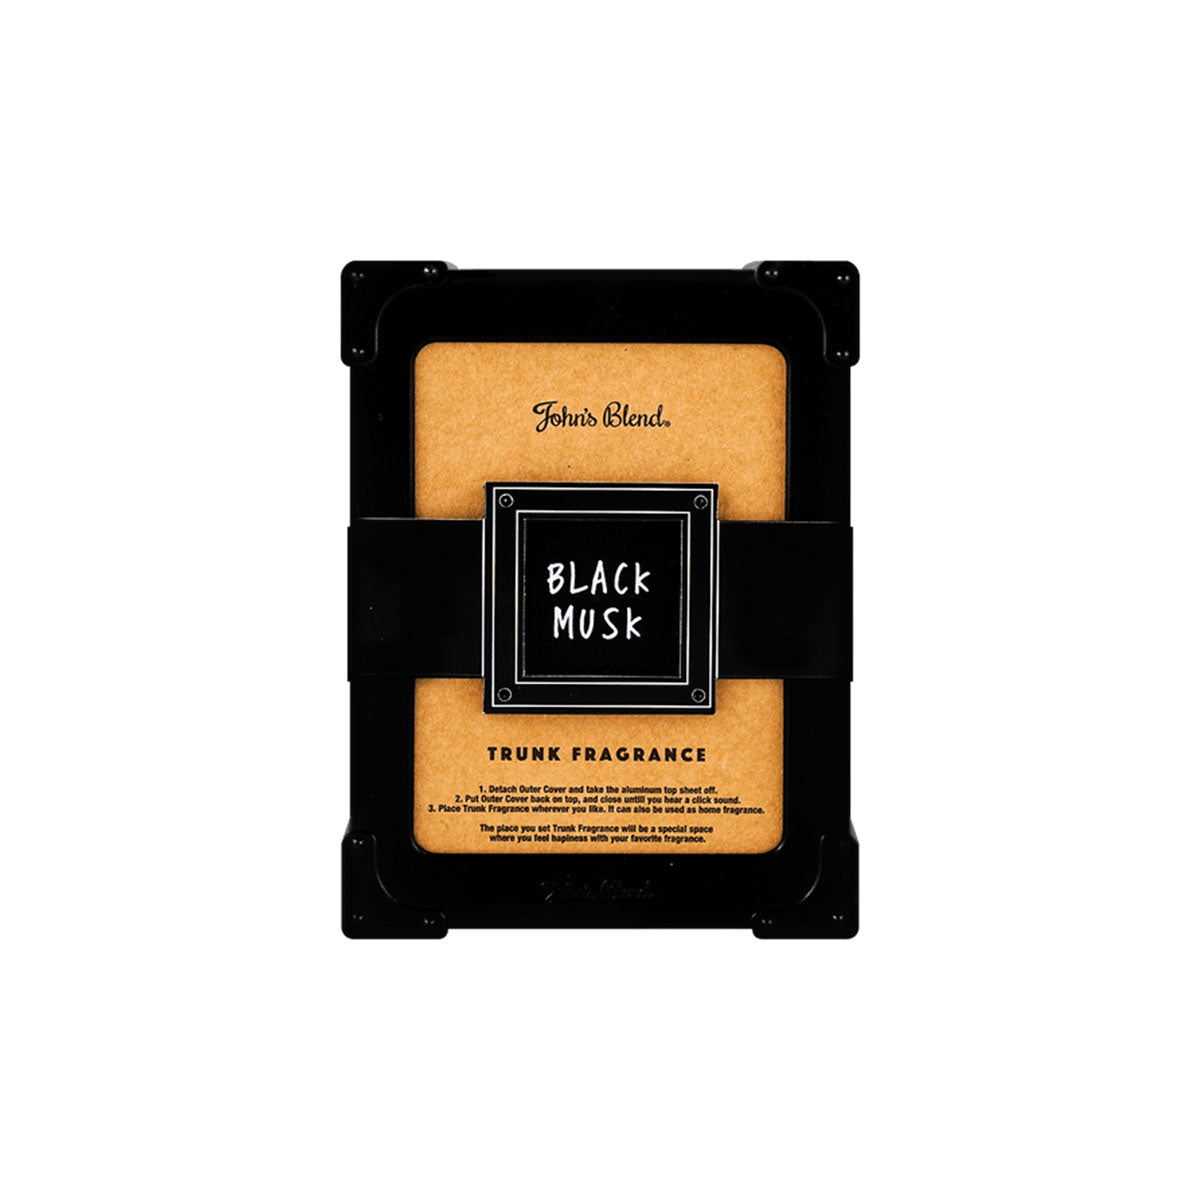 John's Blend Trunk Fragrance #Black Musk  175g